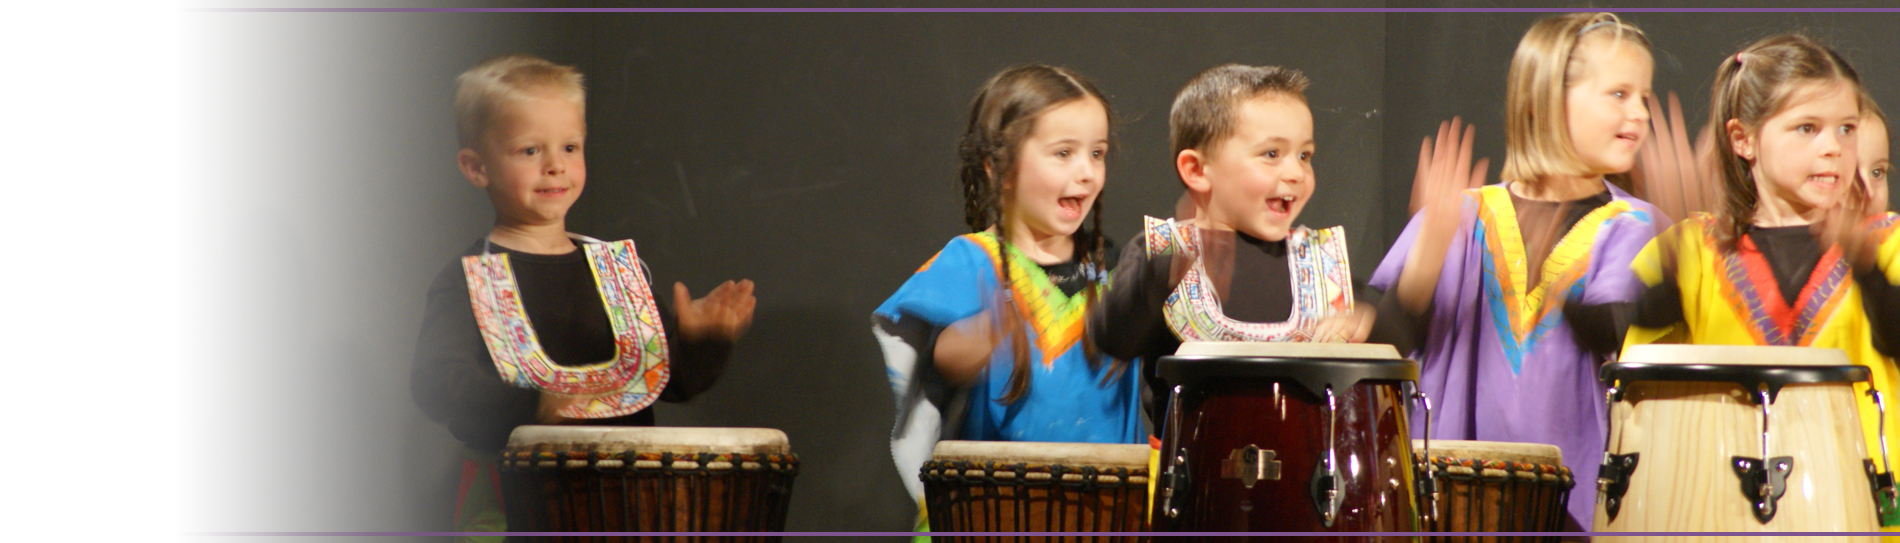 percussions-ecoles-enfants